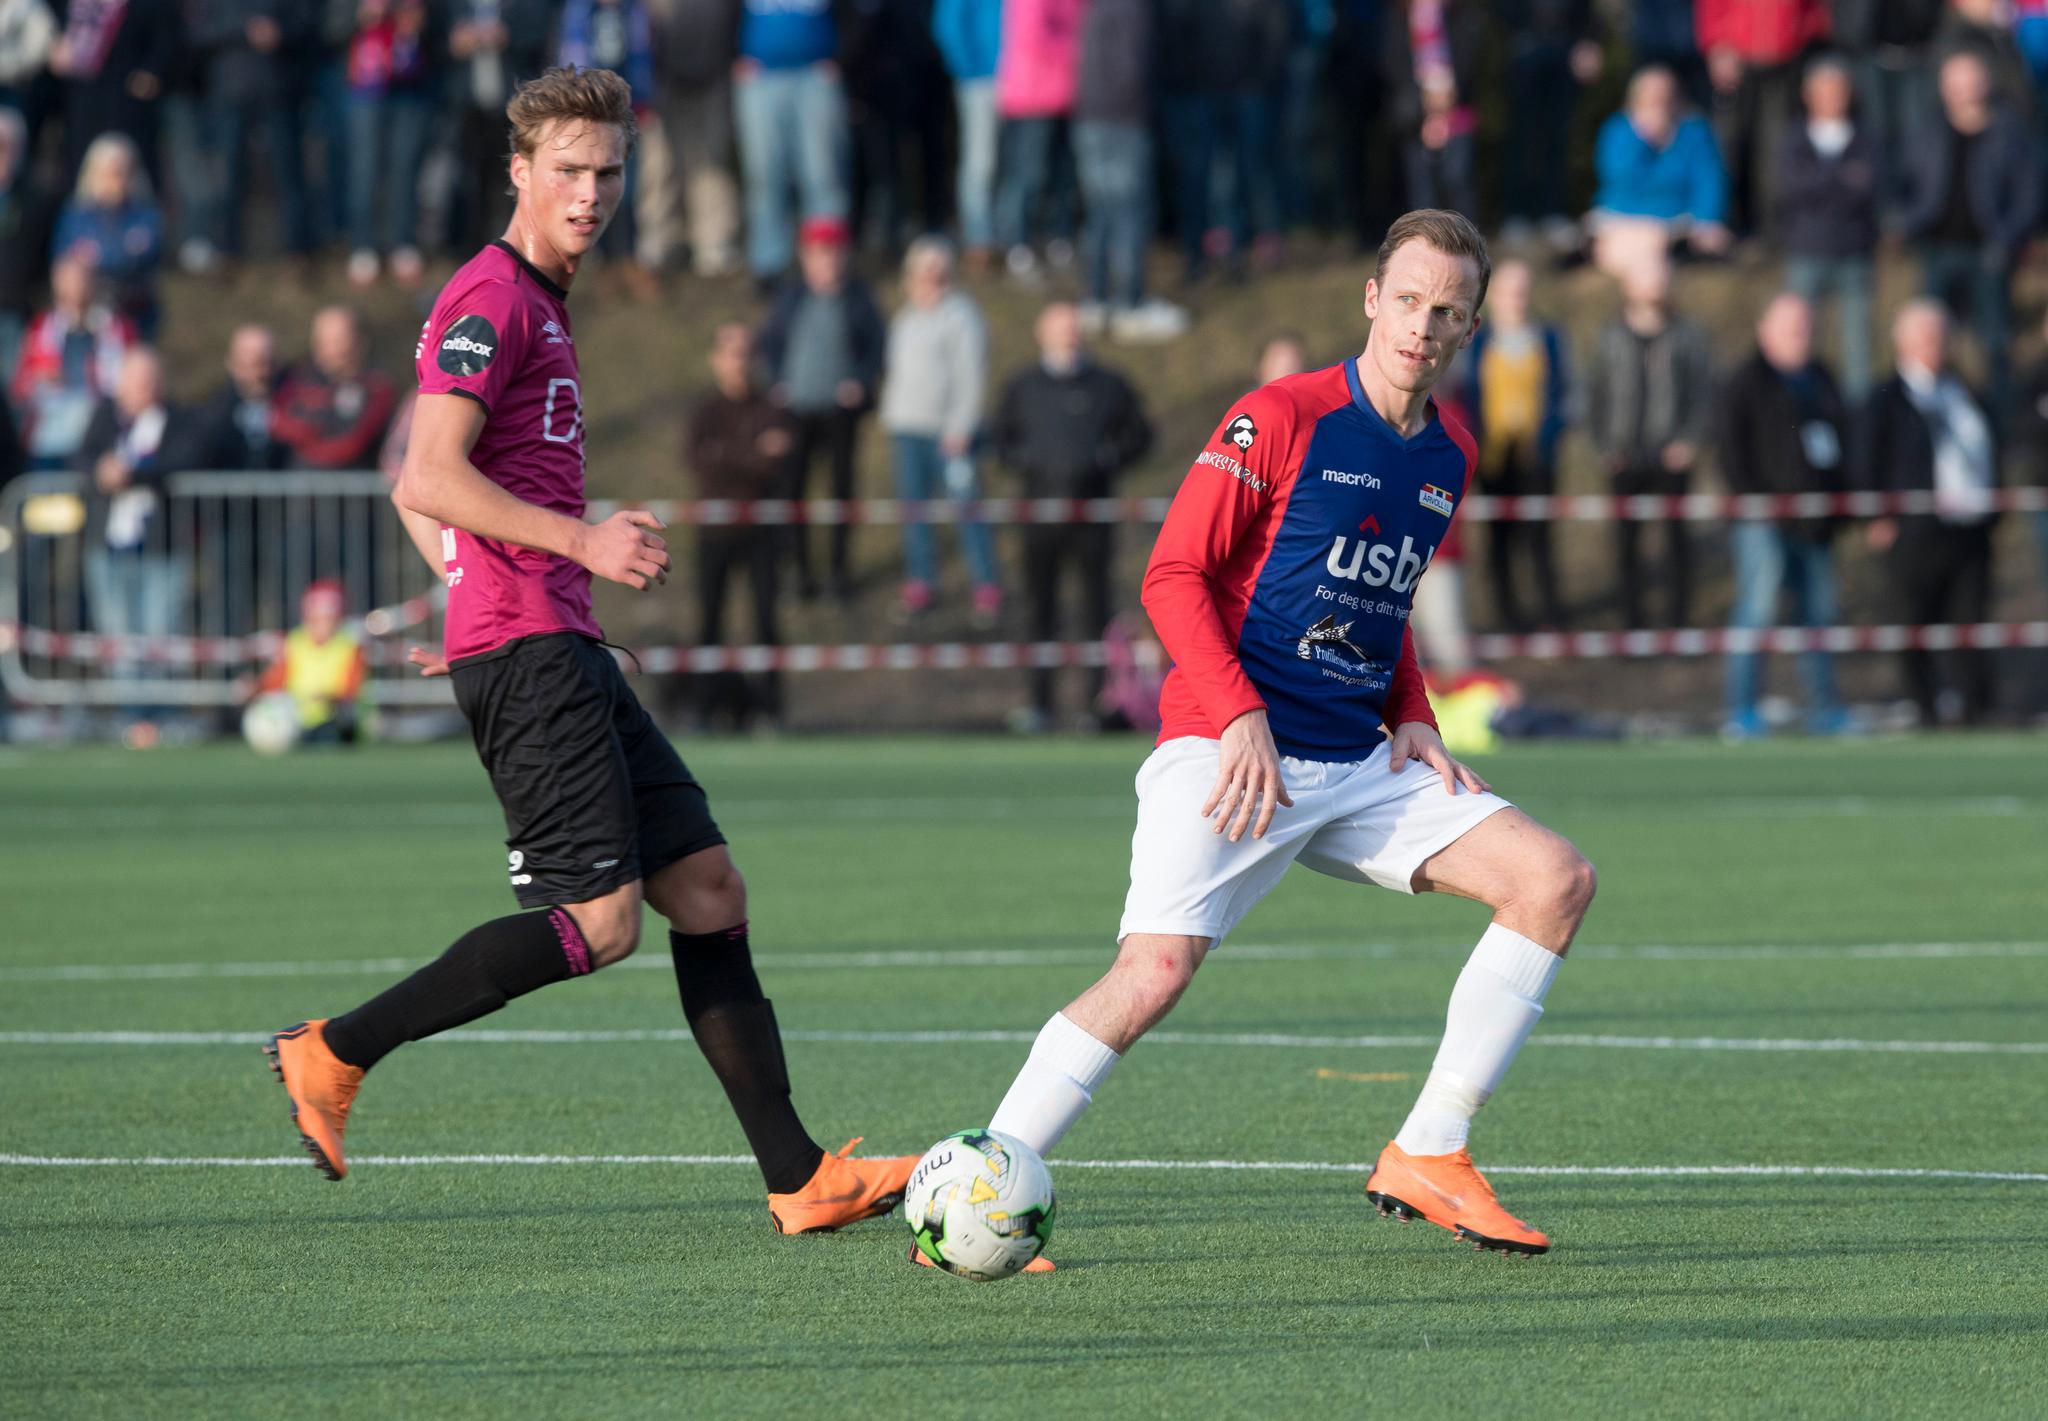 Det gjenstår å se når Årvoll og de øvrige lagene i breddefotballen I Oslo kan spille kamper igjen. Her er Simen Stamsø Møller i aksjon i cupkampen mot Vålerenga i 2018. 